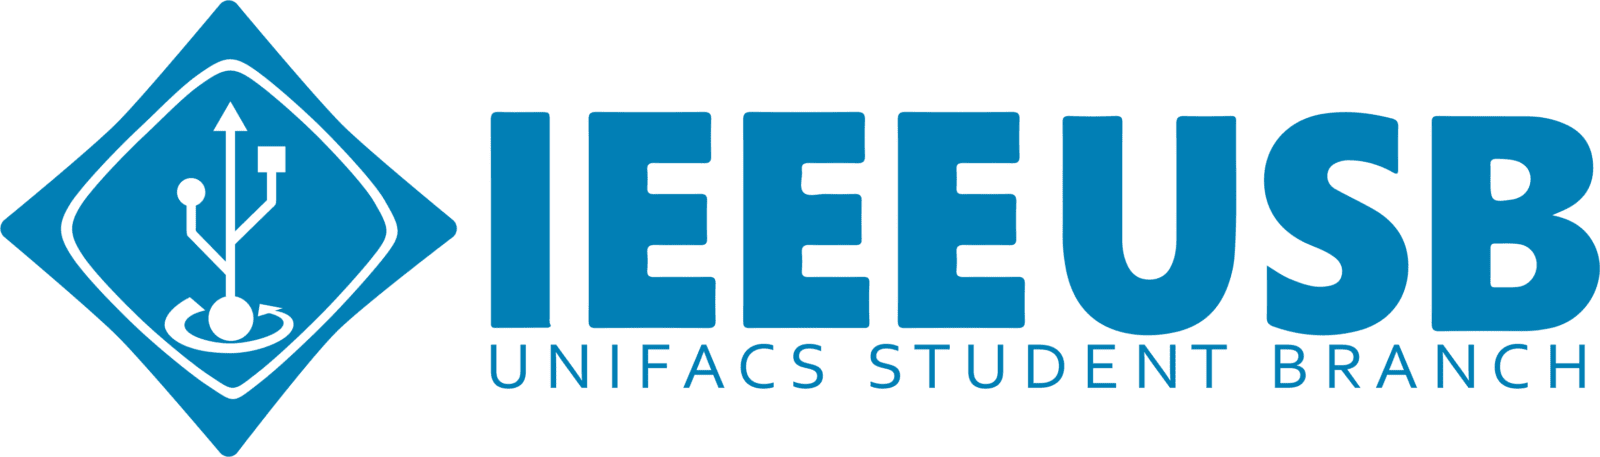 IEEE UNIFACS